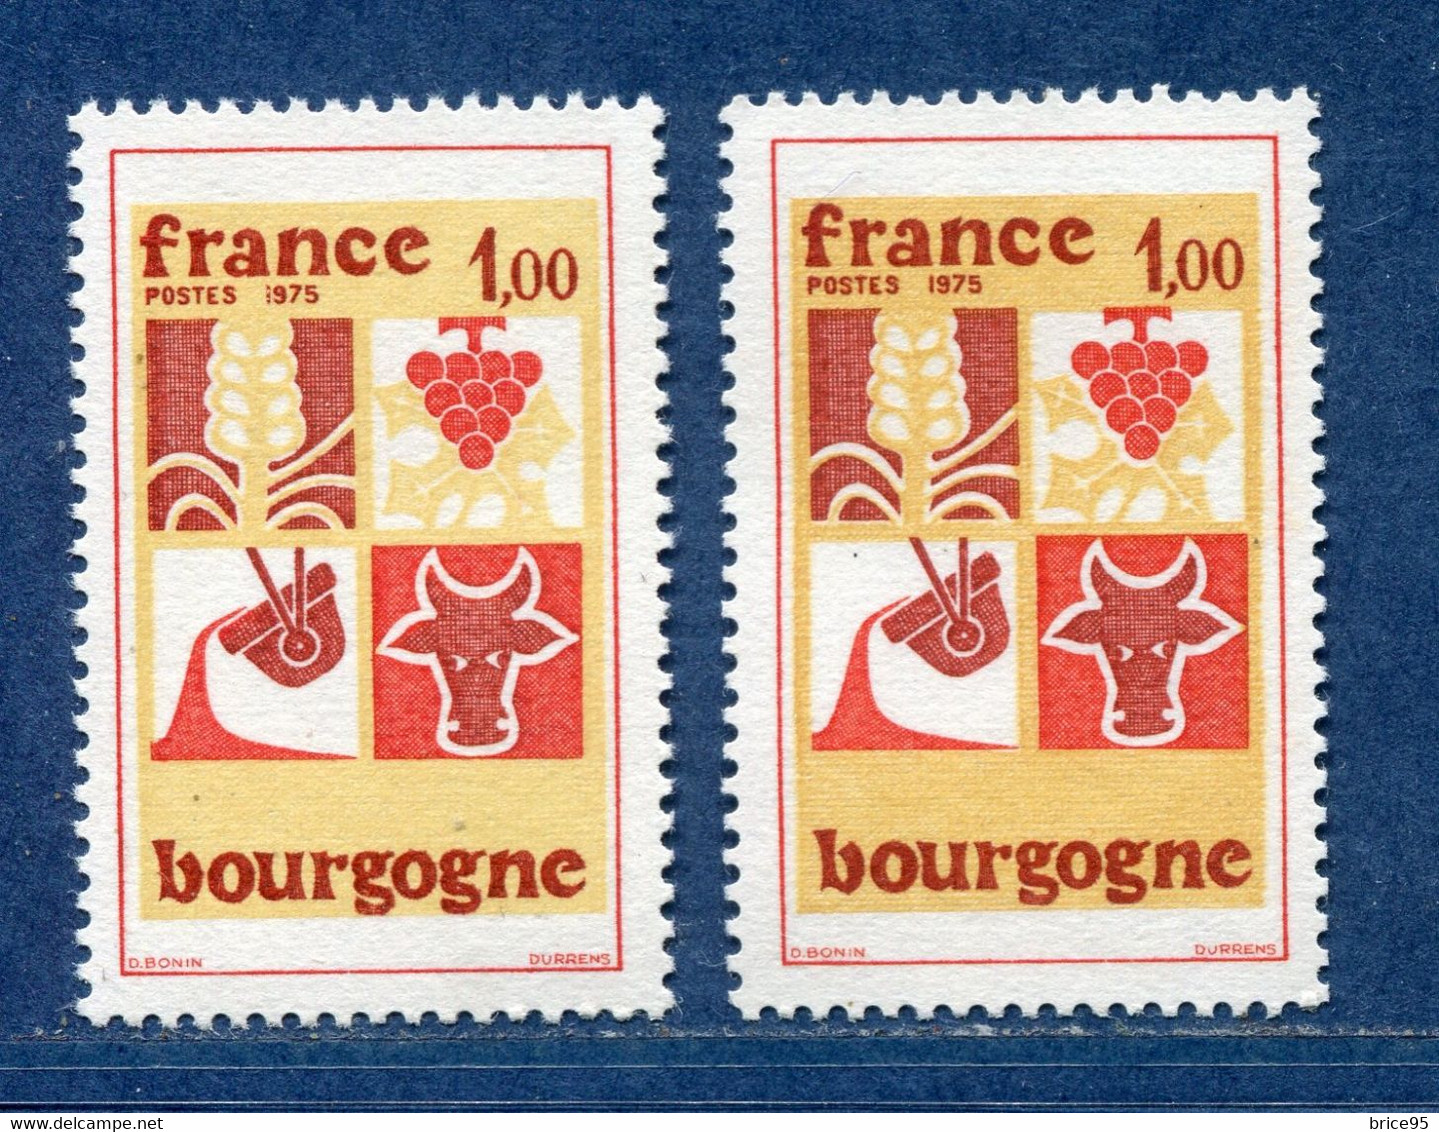 ⭐ France - Variété - YT N° 1848 - Couleurs - Pétouille - Neuf Sans Charnière - 1975 ⭐ - Ungebraucht